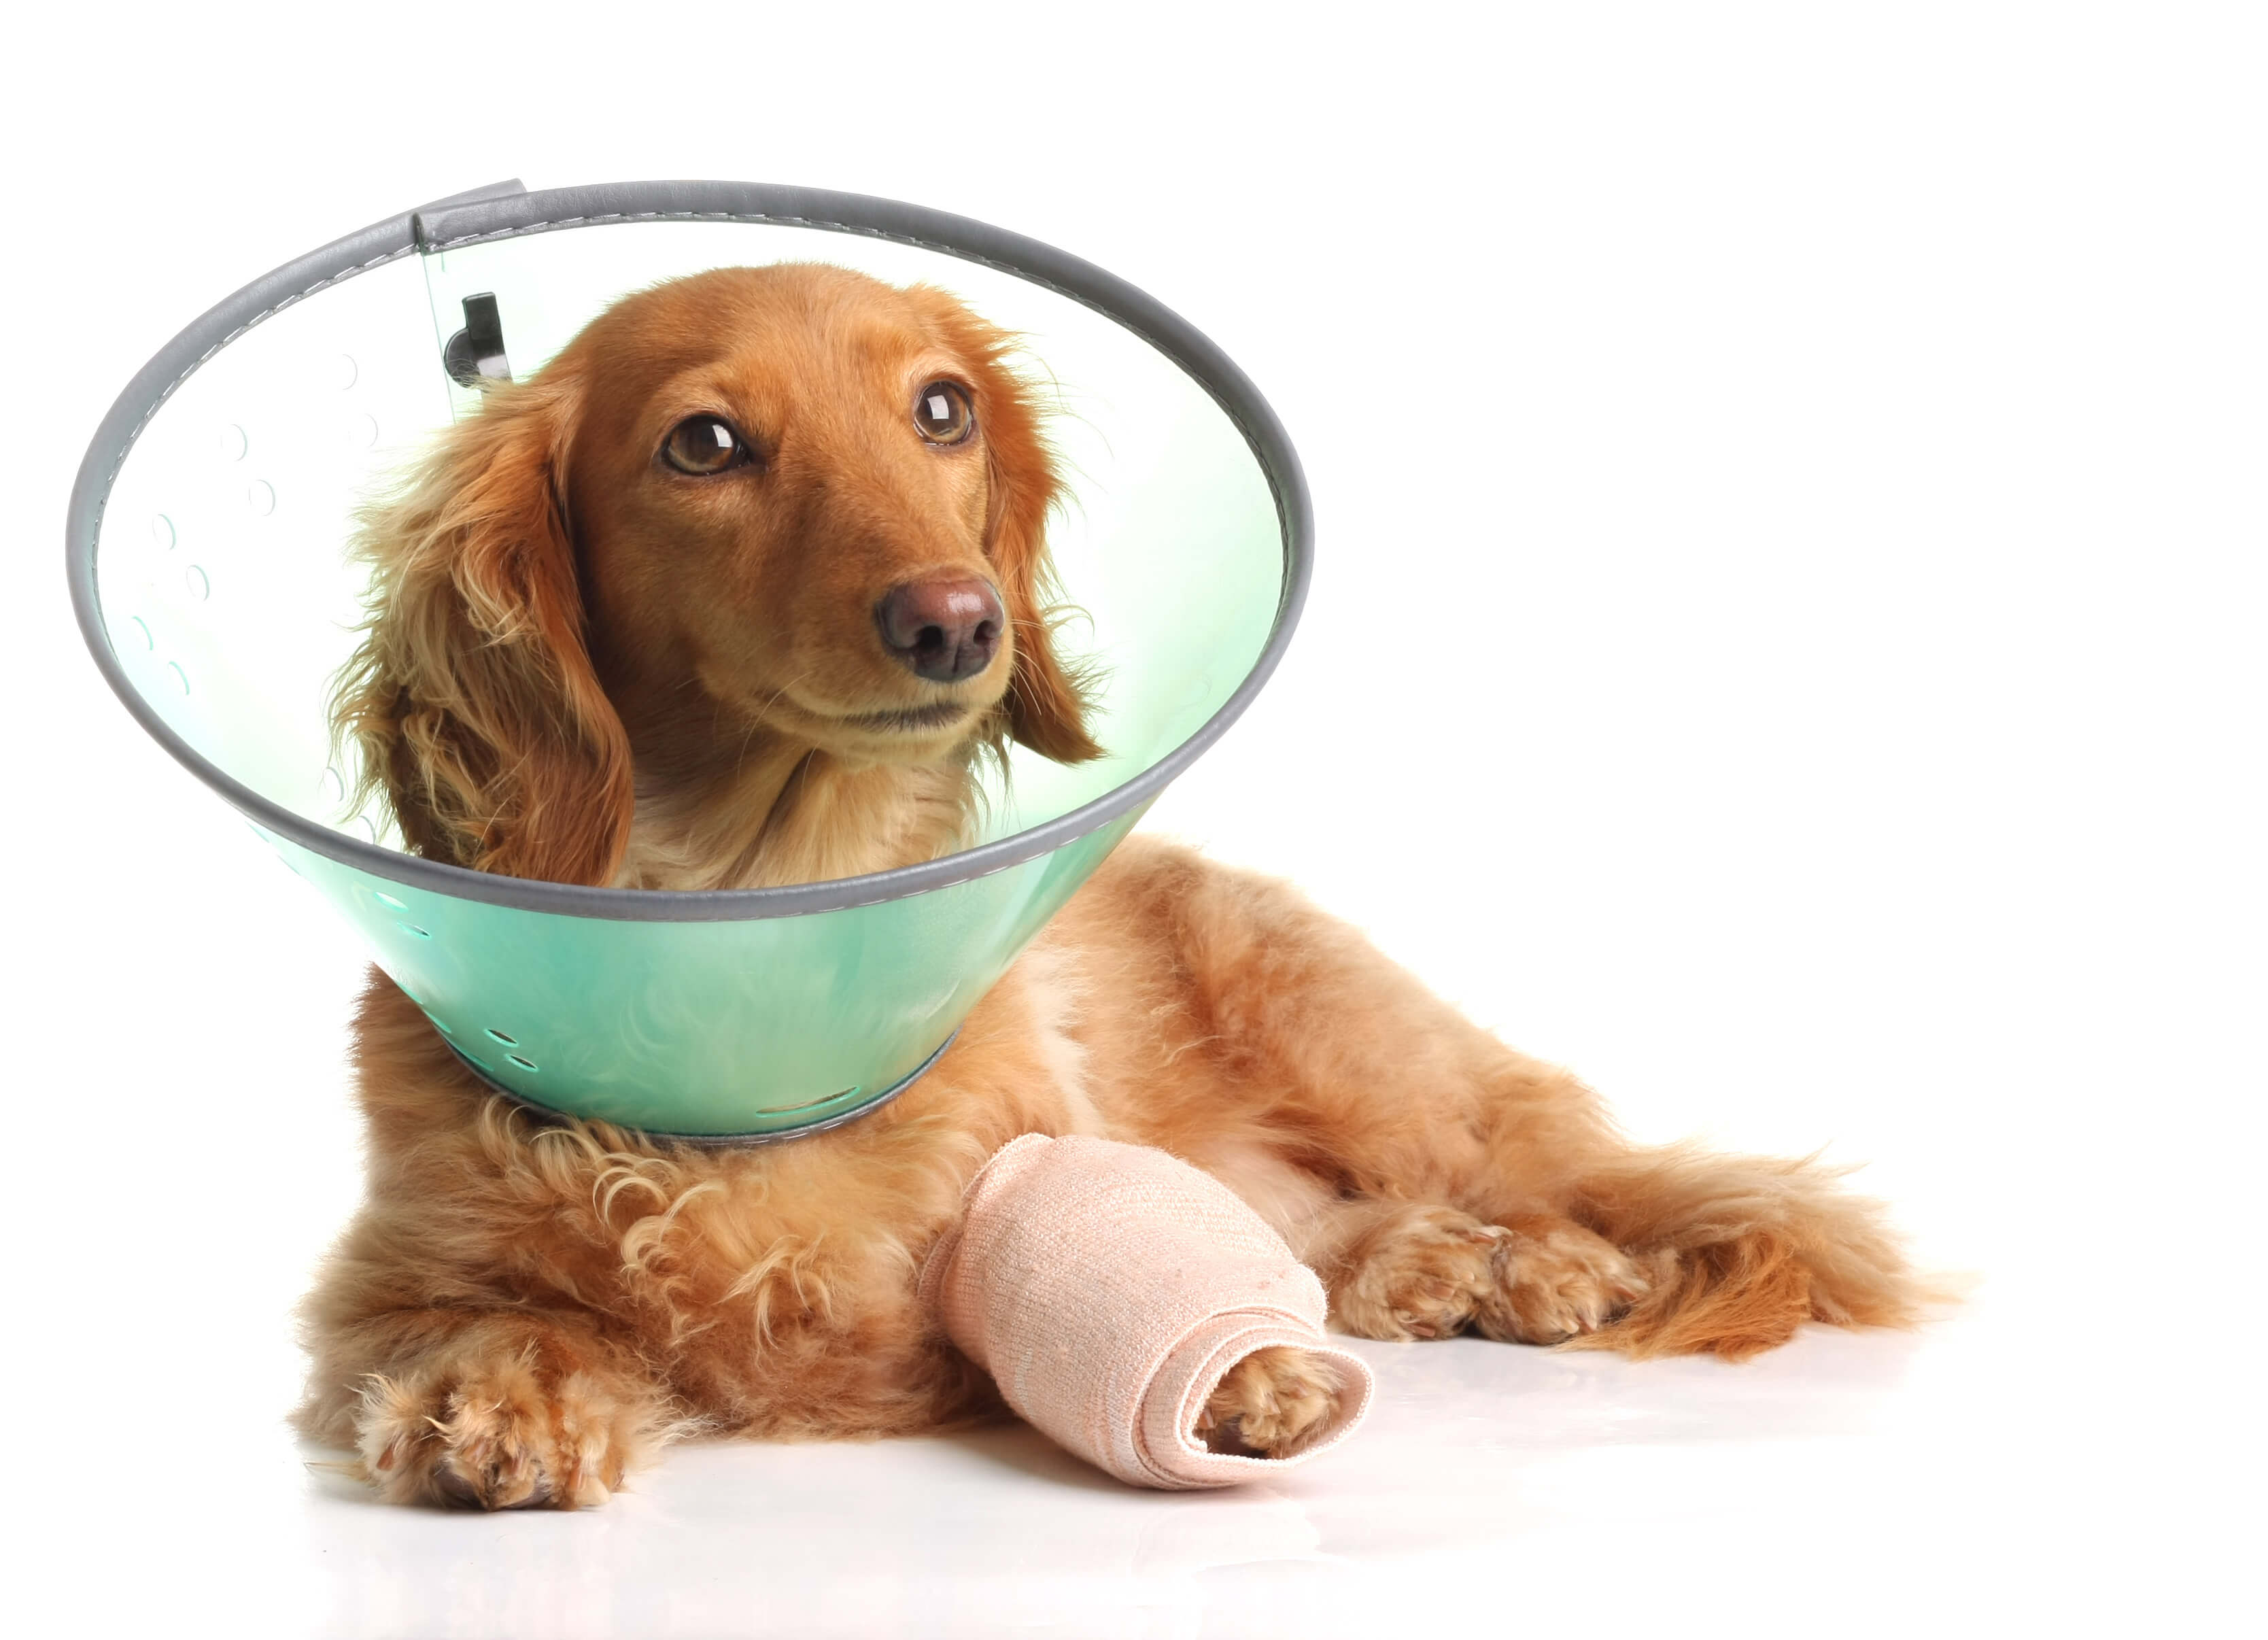 Un chien roux porte un collier et un bandage au niveau de sa patte avant gauche